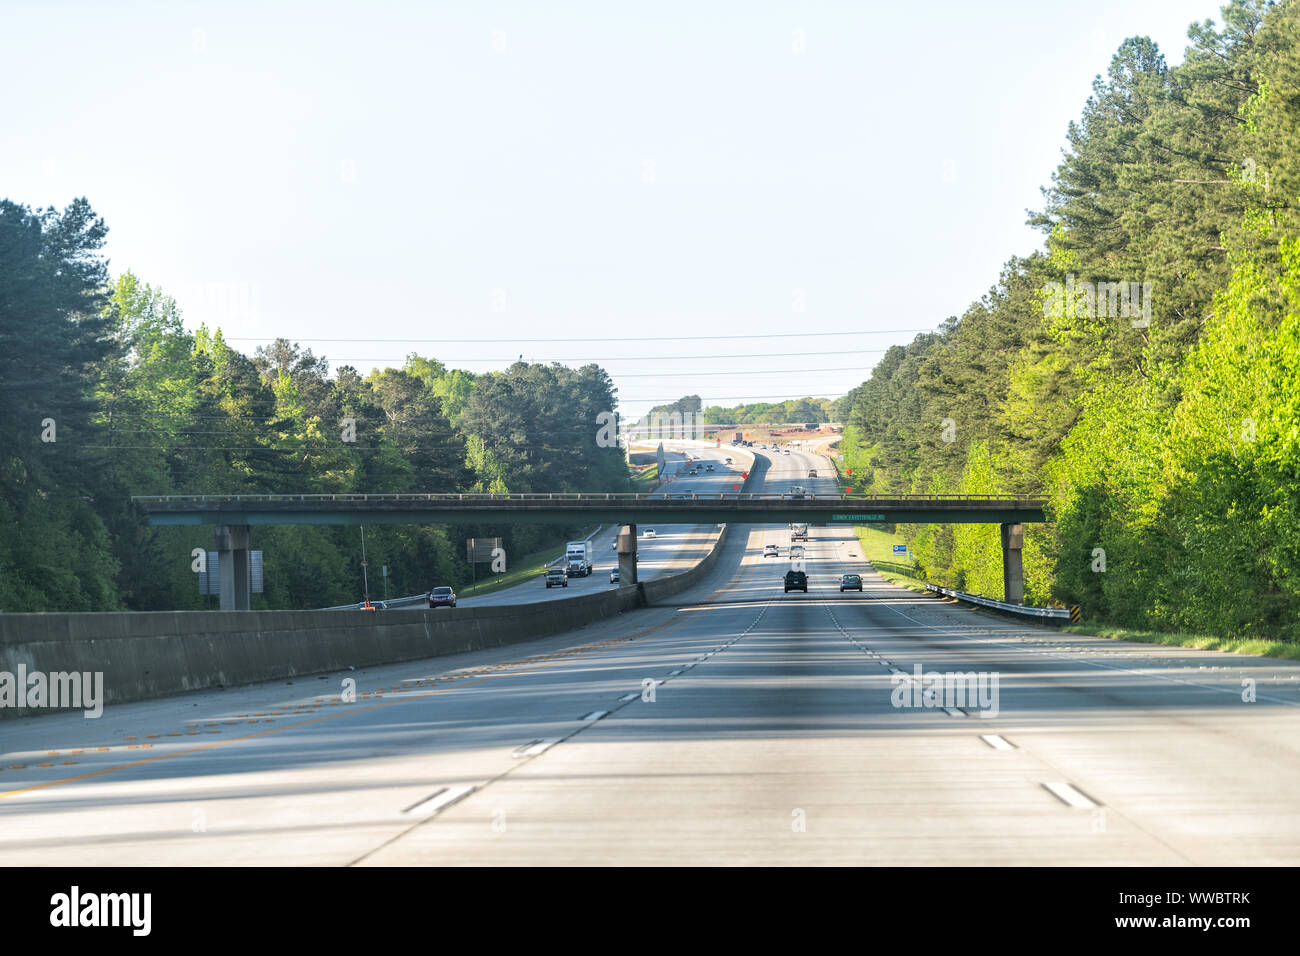 Interstate Highway 85 Straße mit Überführung Brücke Ausfahrt Straße am frühen Morgen bei der Stadt Atlanta, Georgia mit Autos fahren auf Pendeln Stockfoto